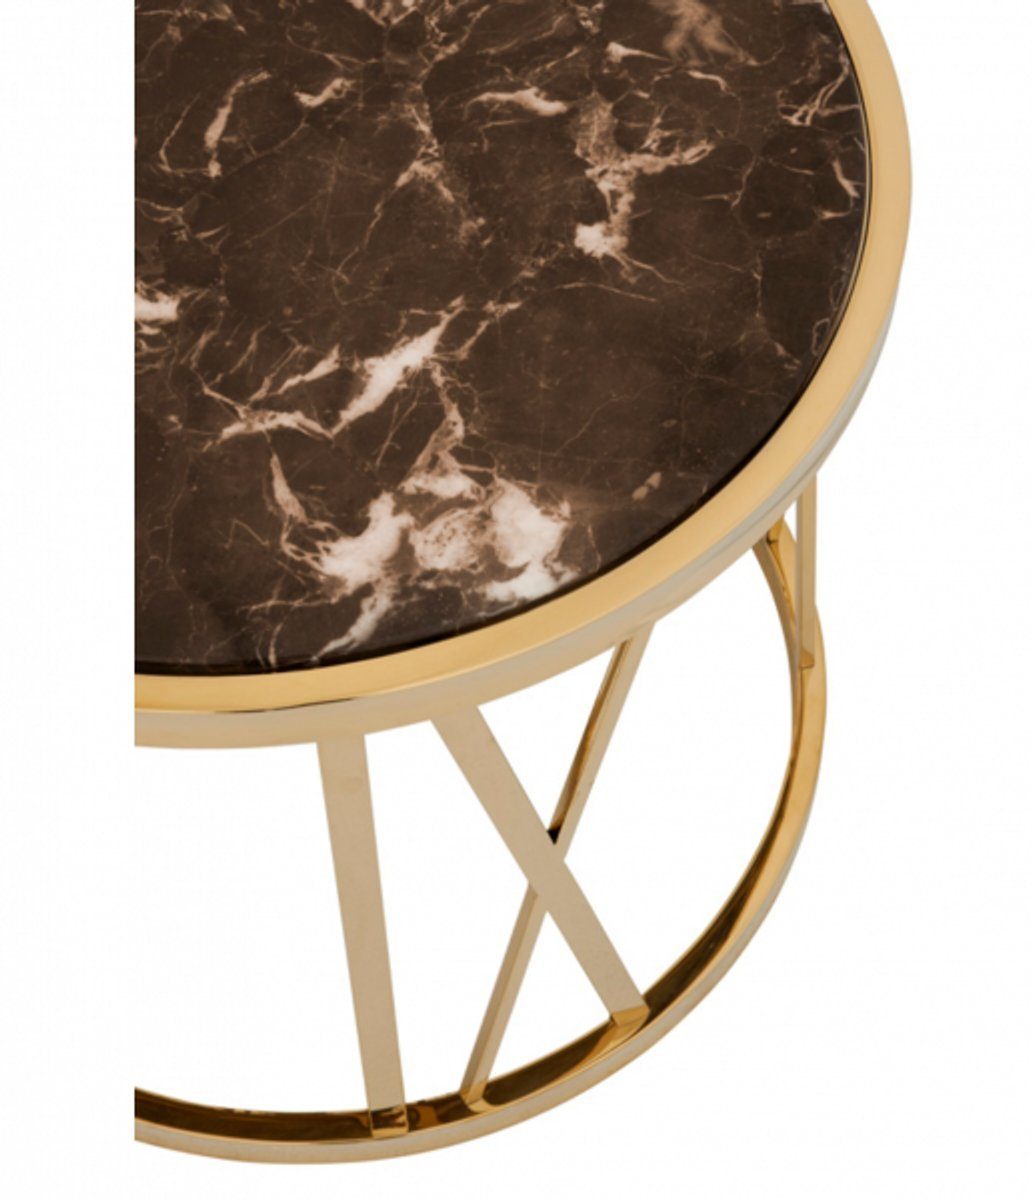 Gold Marmorplatte Beistelltisch Designer Art mit Kollektion Beistelltisch - Luxus Deco Casa Luxus Padrino brauner